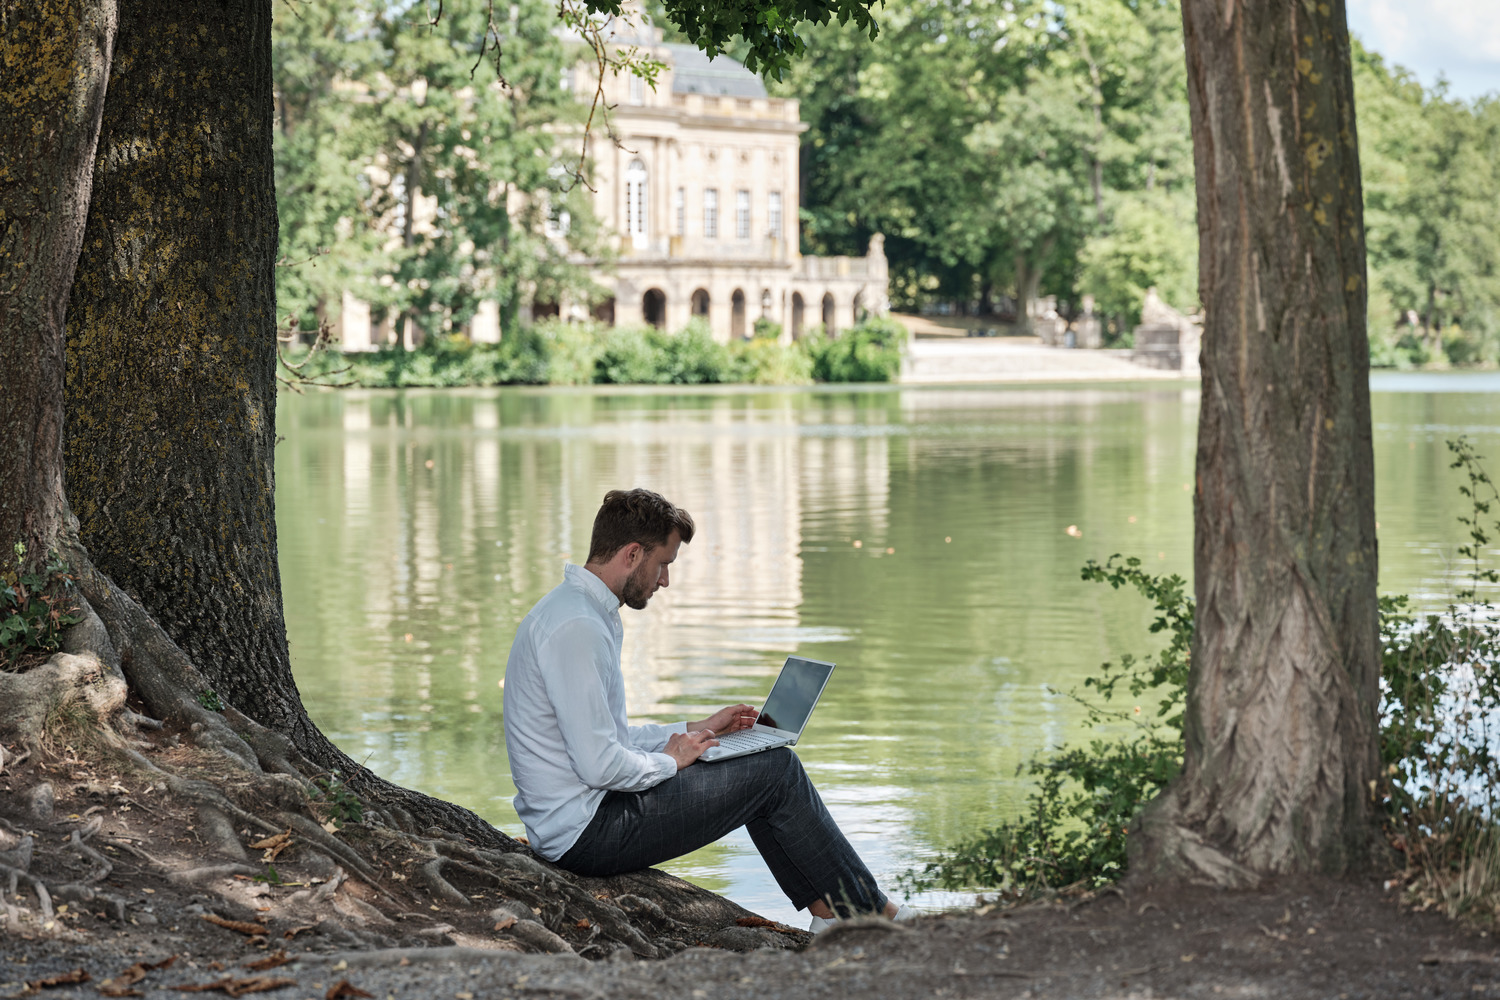 Ein Mann sitzt an einen Baum gelehnt am Ufer eines kleinen Sees und arbeitet an einem Laptop. Im Hintergrund befindet sich ein Schloss.